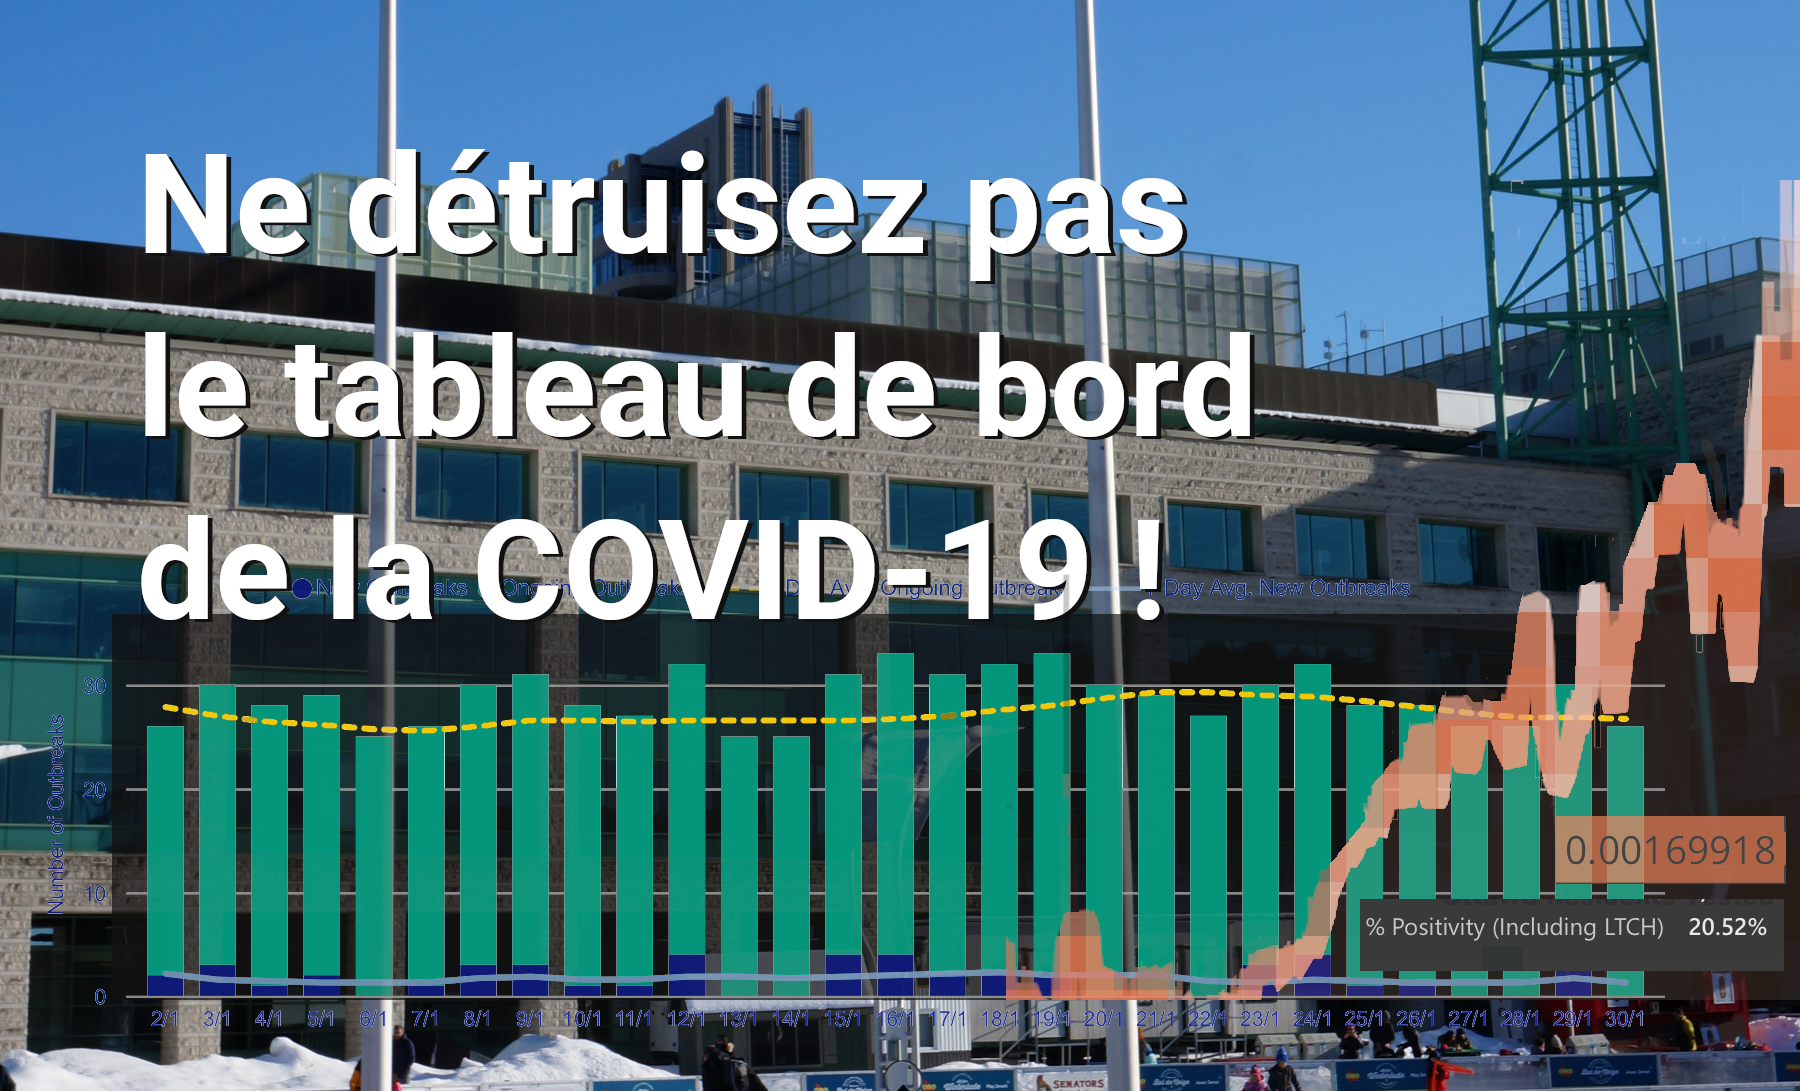 Photo de l’hôtel de ville d’Ottawa, accompagnée de quelques graphiques et du texte : Ne détruisez pas le tableau de bord de la COVID-19 !